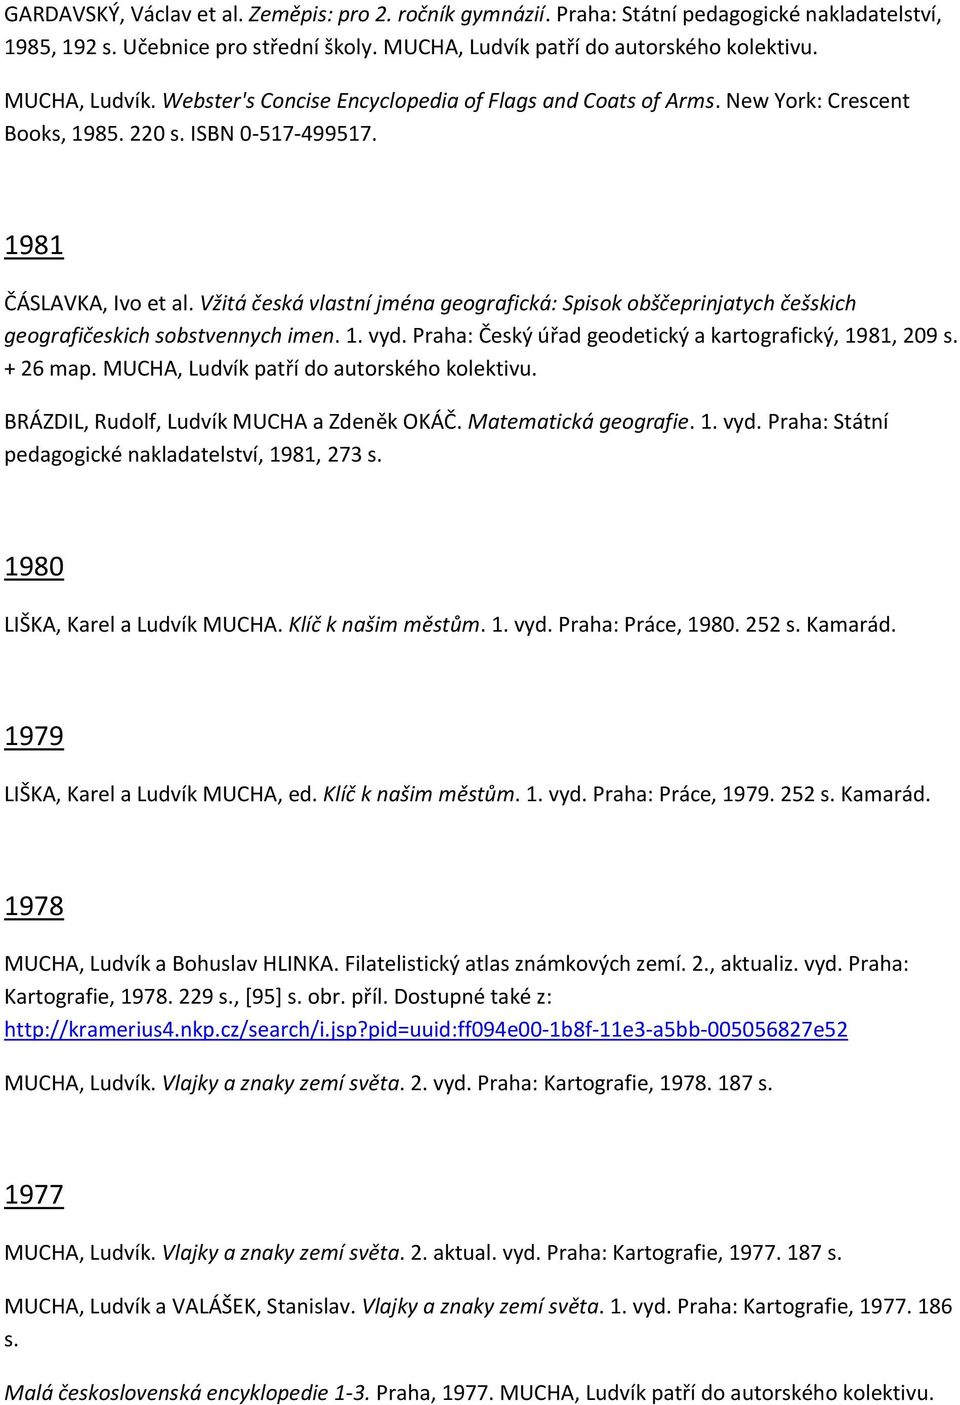 Vžitá česká vlastní jména geografická: Spisok obščeprinjatych češskich geografičeskich sobstvennych imen. 1. vyd. Praha: Český úřad geodetický a kartografický, 1981, 209 s. + 26 map.